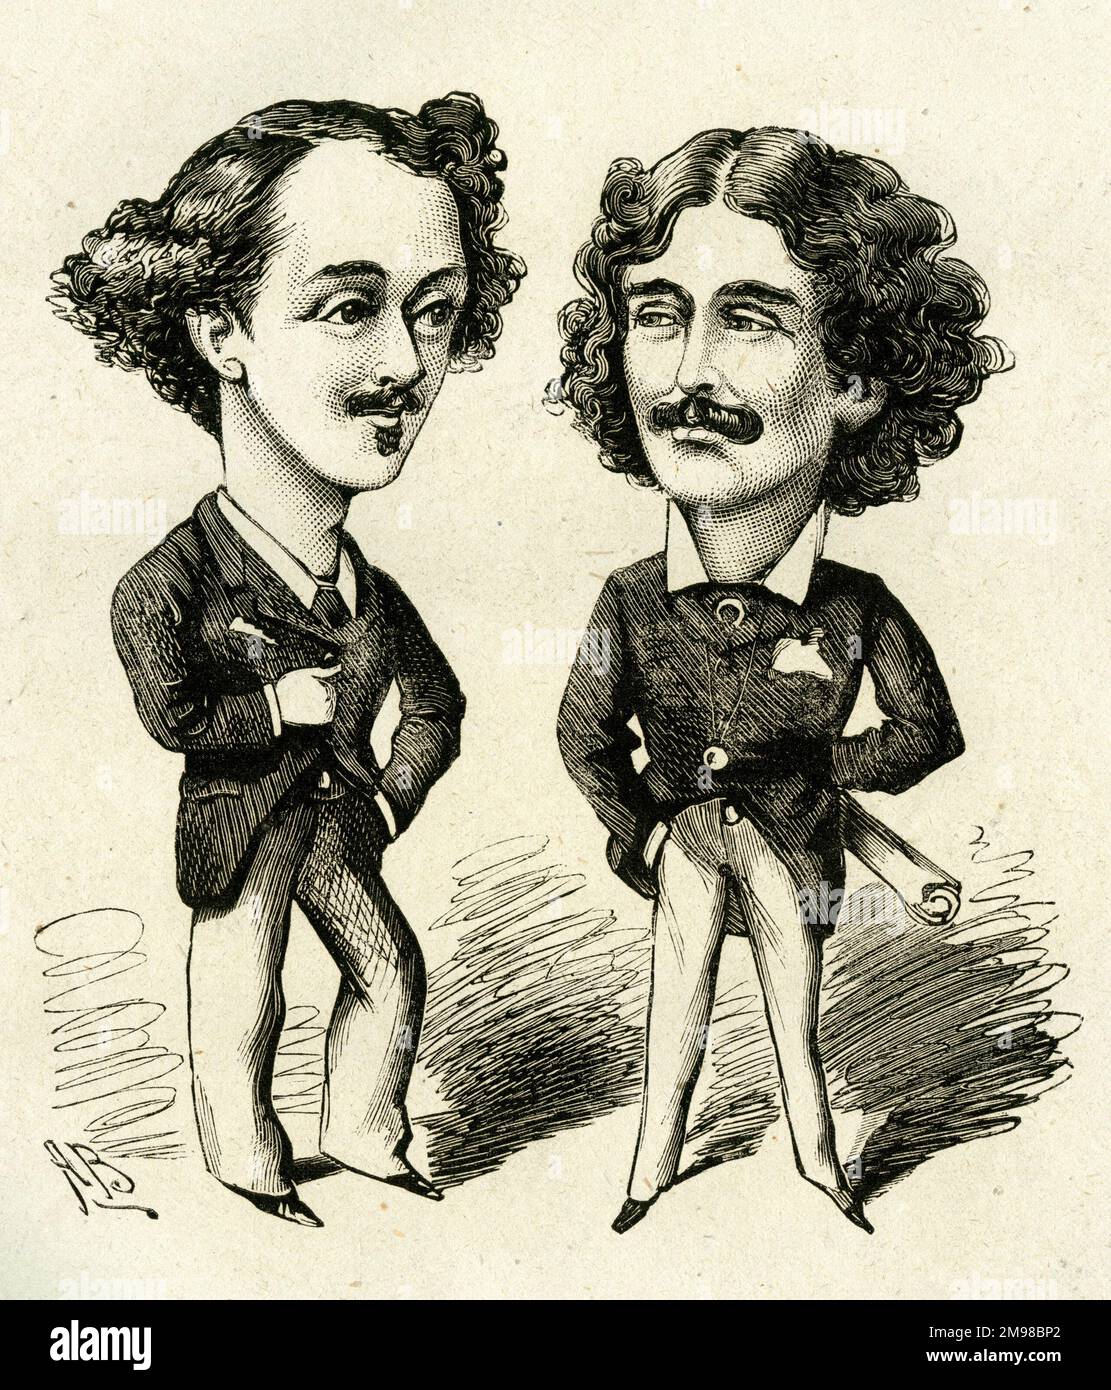 Cartoon, die beiden Herberts, Herbert Gladstone (links, 1854-1930) und Herbert Sims Reeves (rechts, 1855-1930) – sie haben die alten Männer noch nicht distanziert. Beide hatten berühmtere Väter (Gladstone, der Politiker, Reeves, der Sänger). Stockfoto